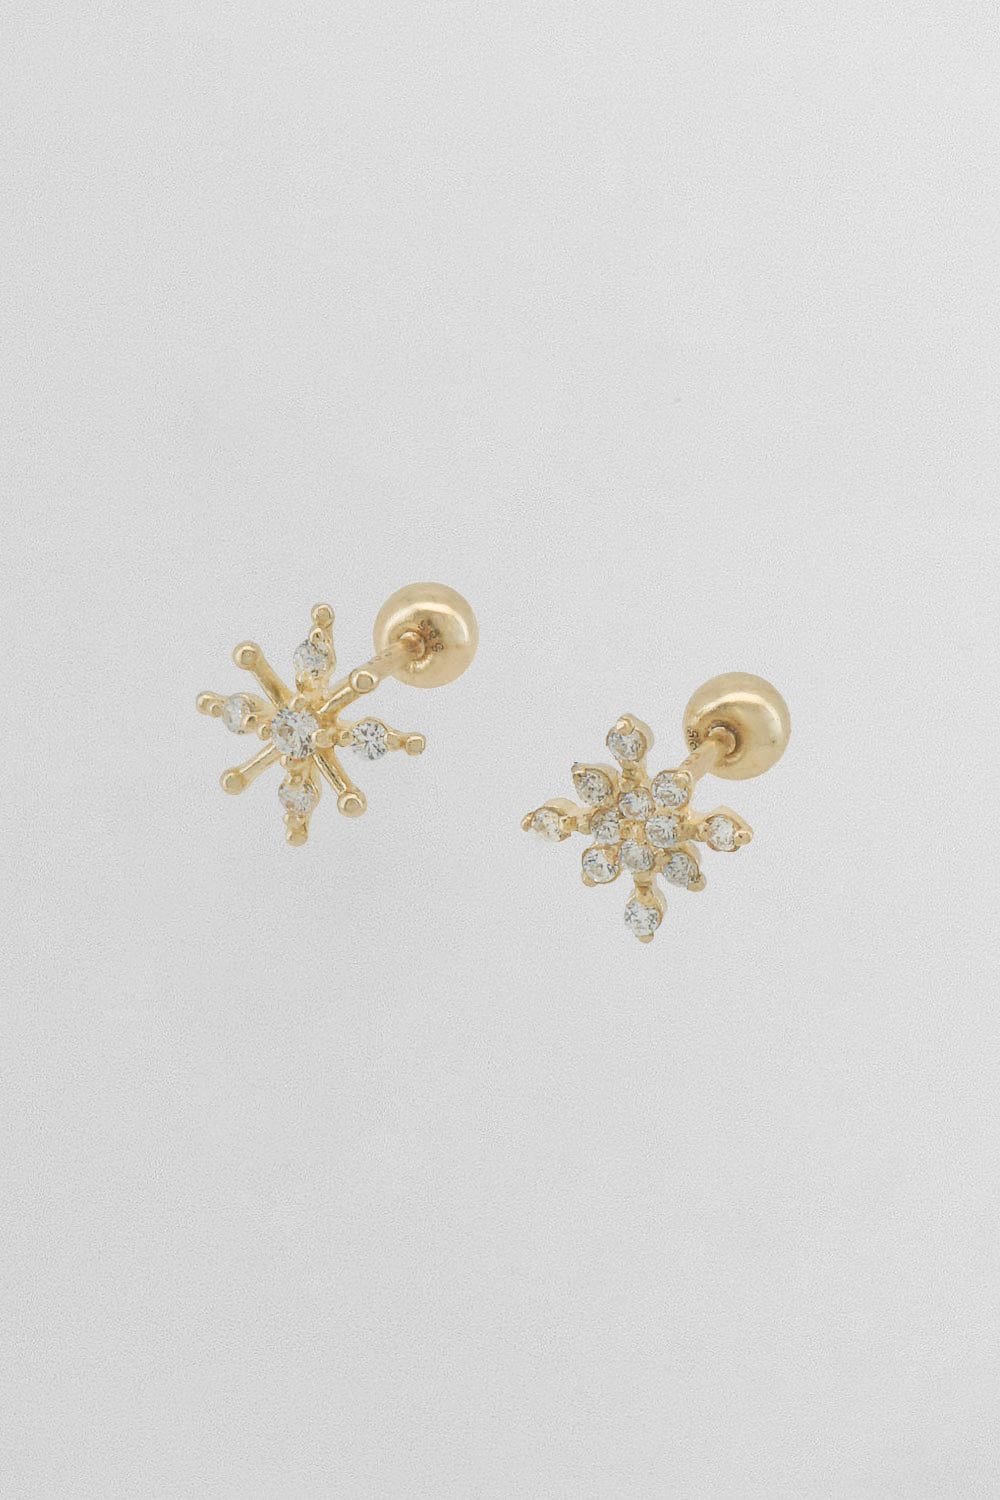 14k snowflake piercing earrings 21G